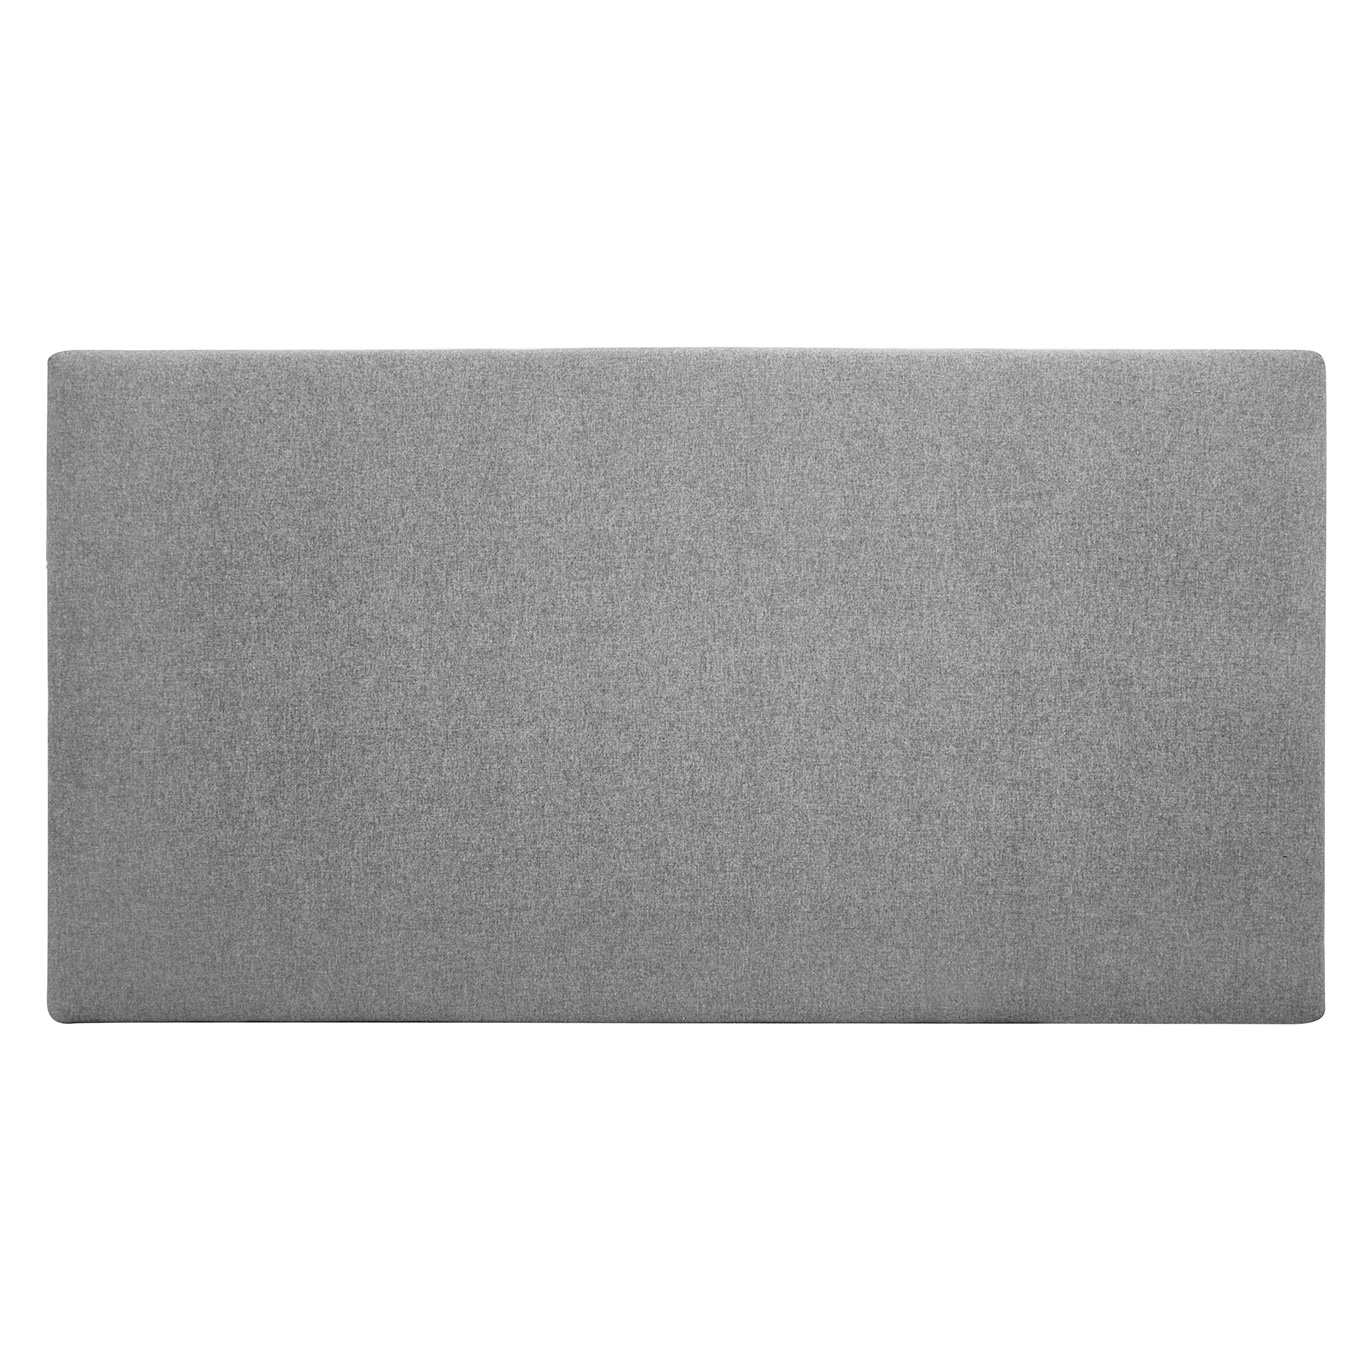 Tête de lit polyester lisse couleur grise 180x80cm